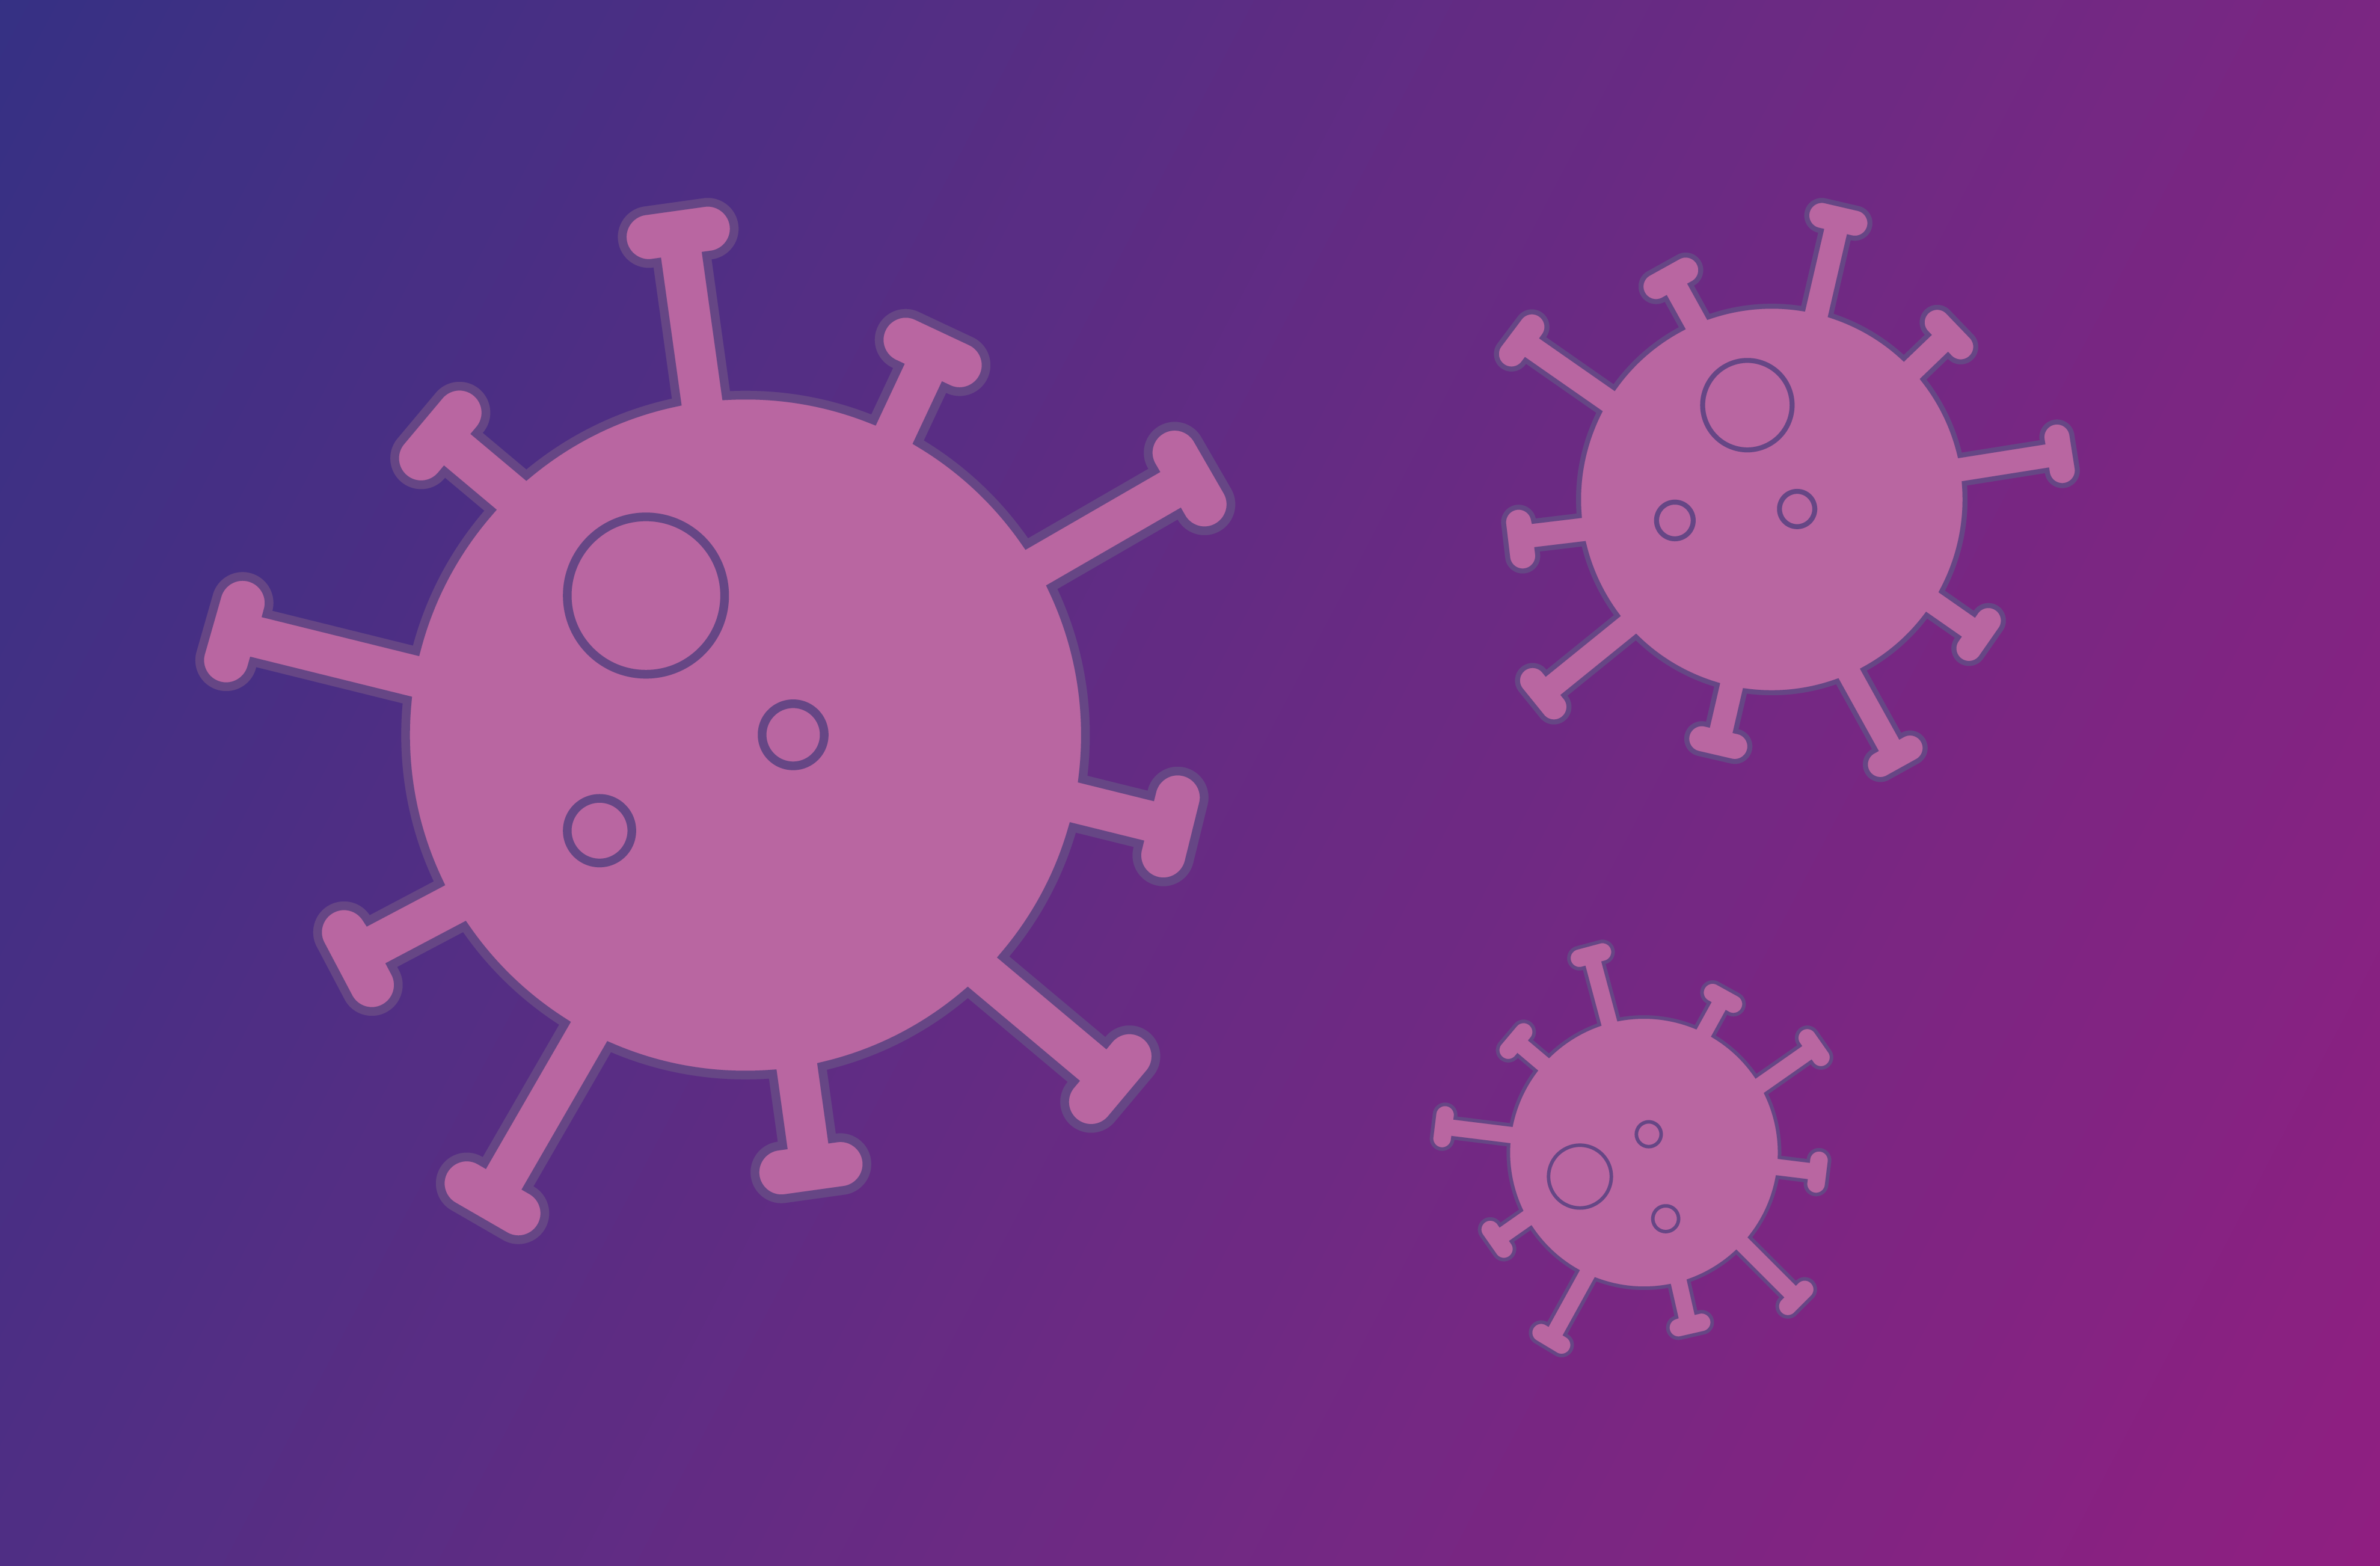 Stilisierte Viren auf lila Hintergrund.